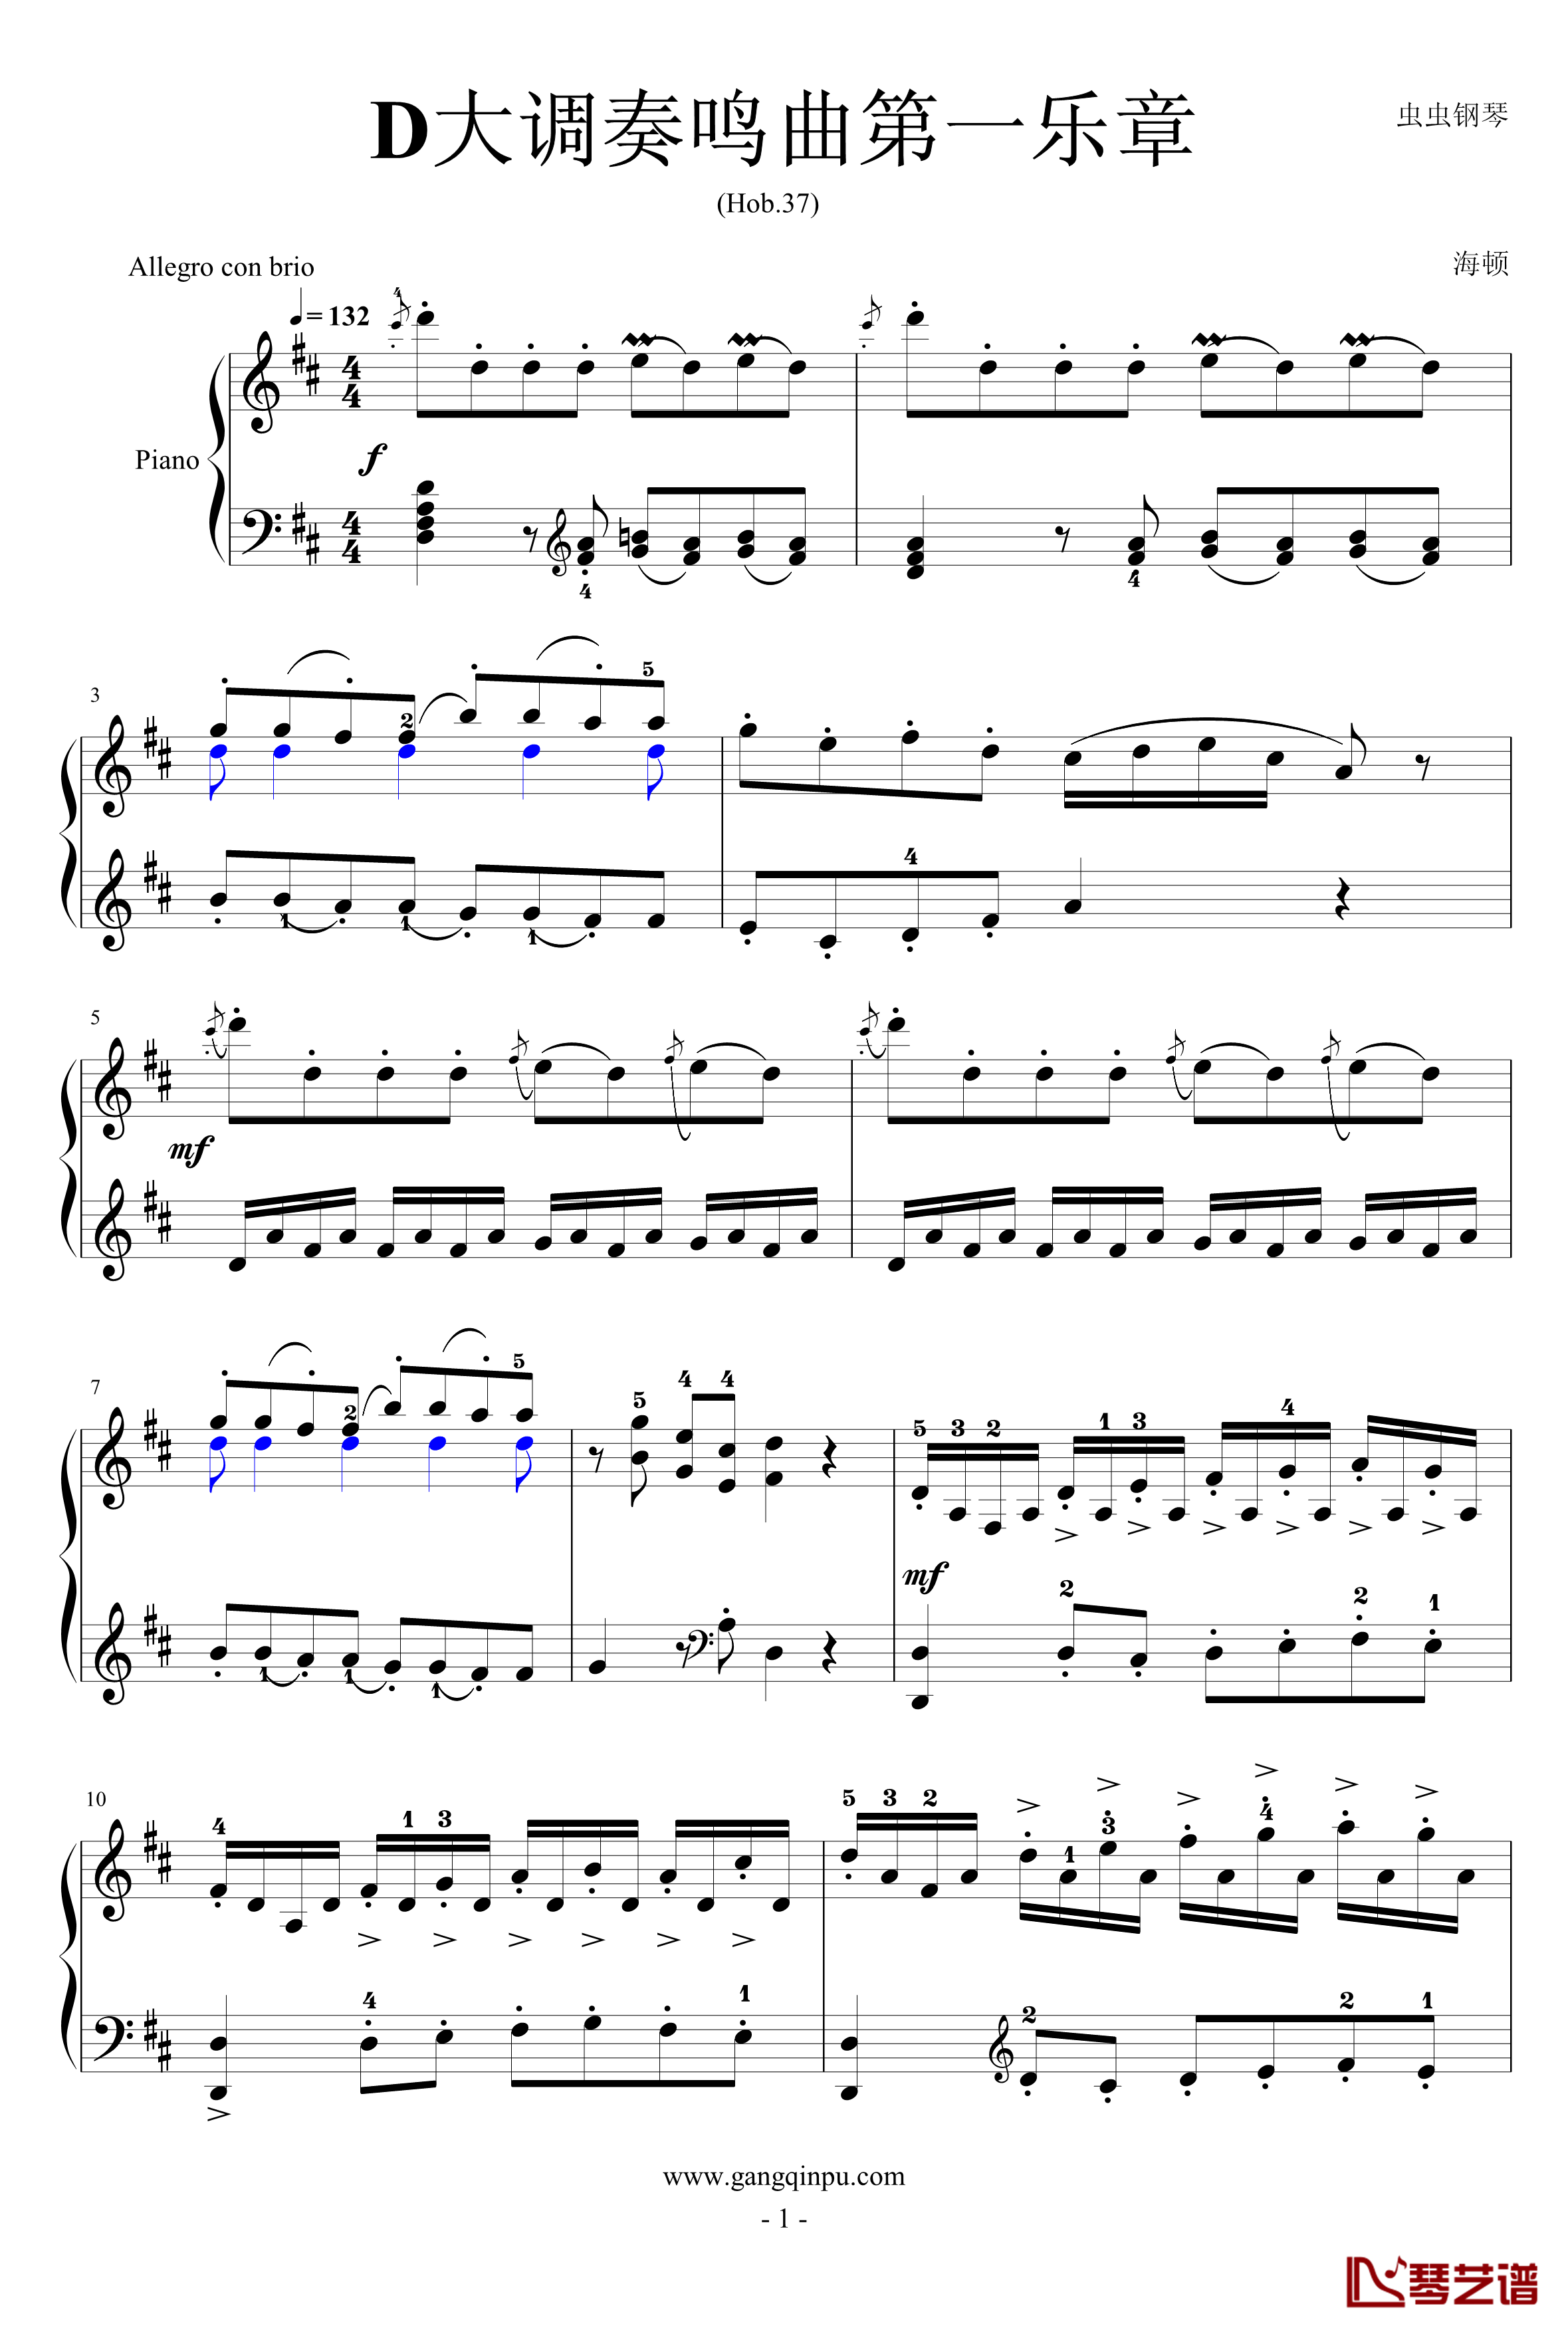 D大调奏鸣曲钢琴谱-海顿1